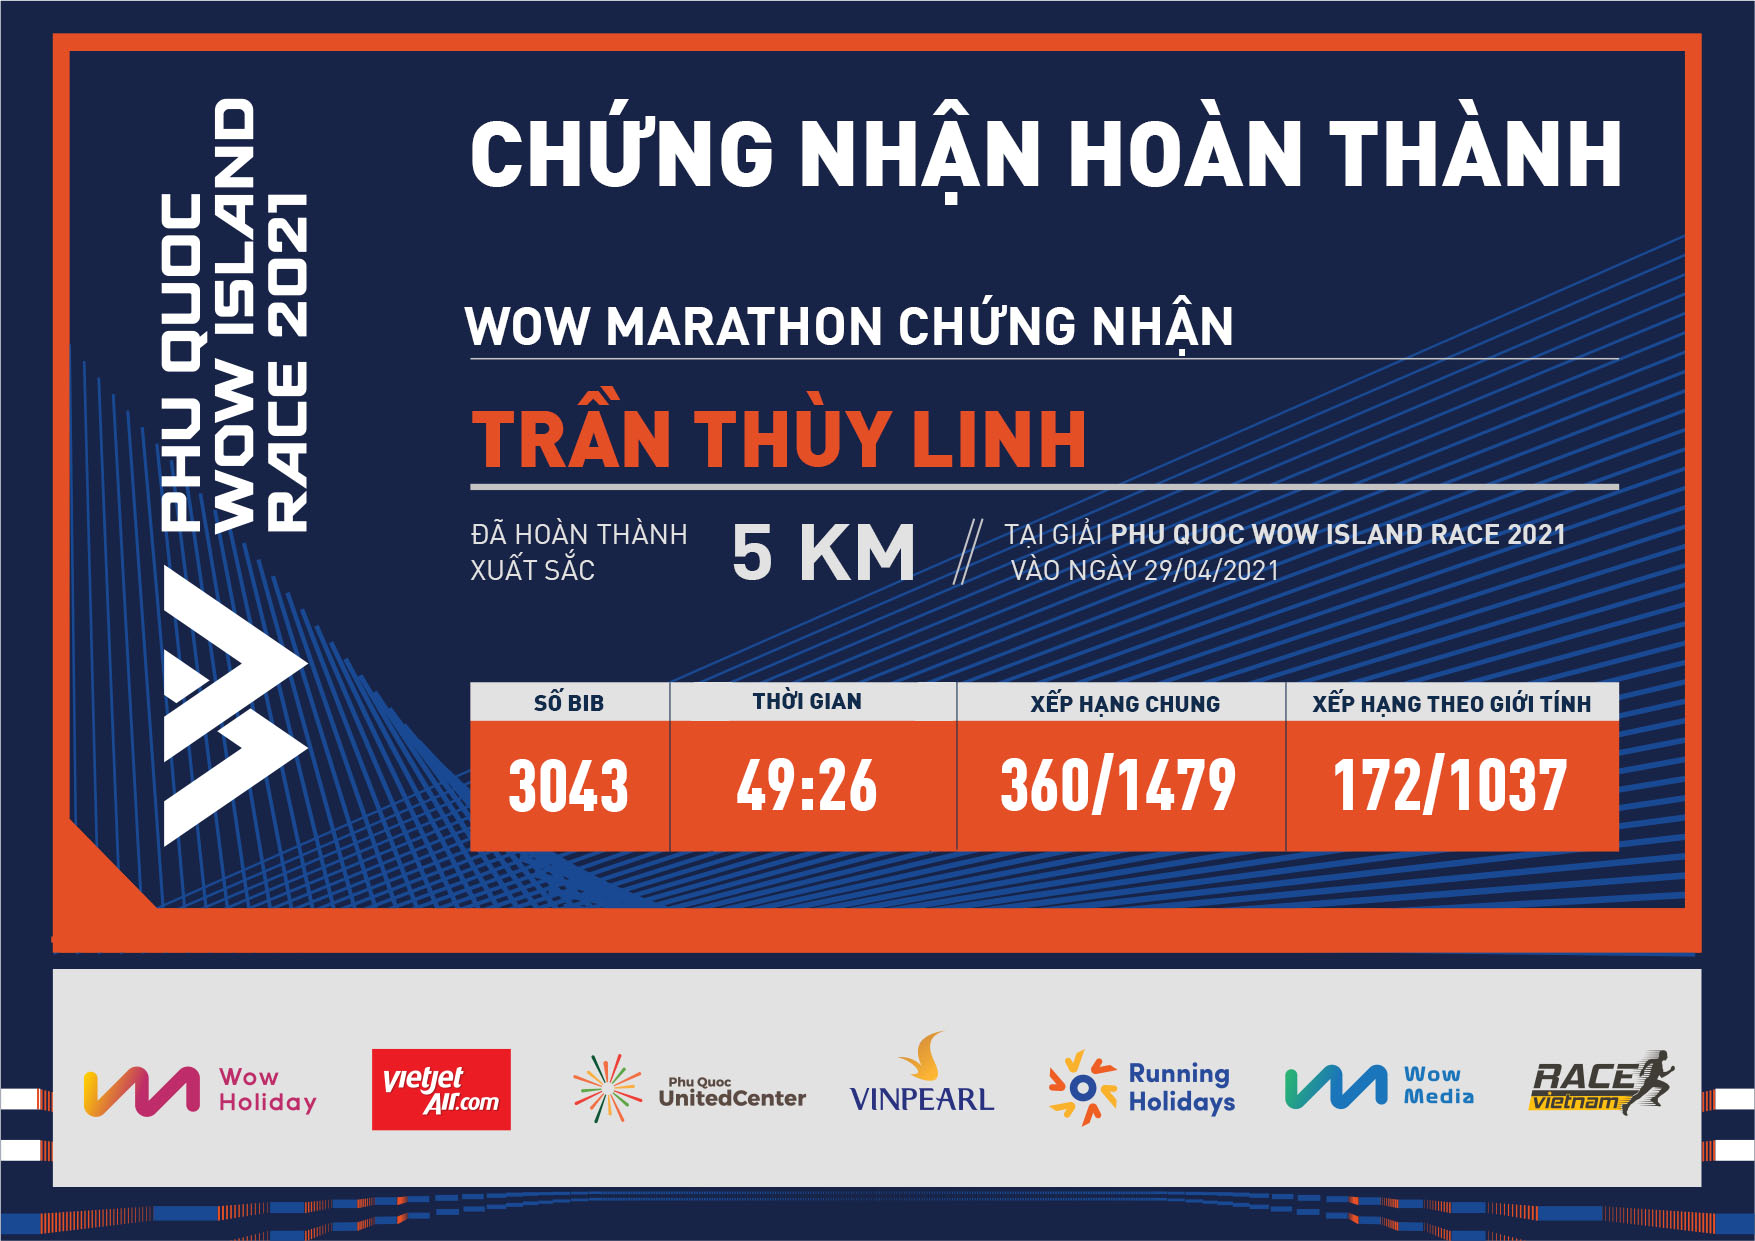 3043 - Trần Thùy Linh